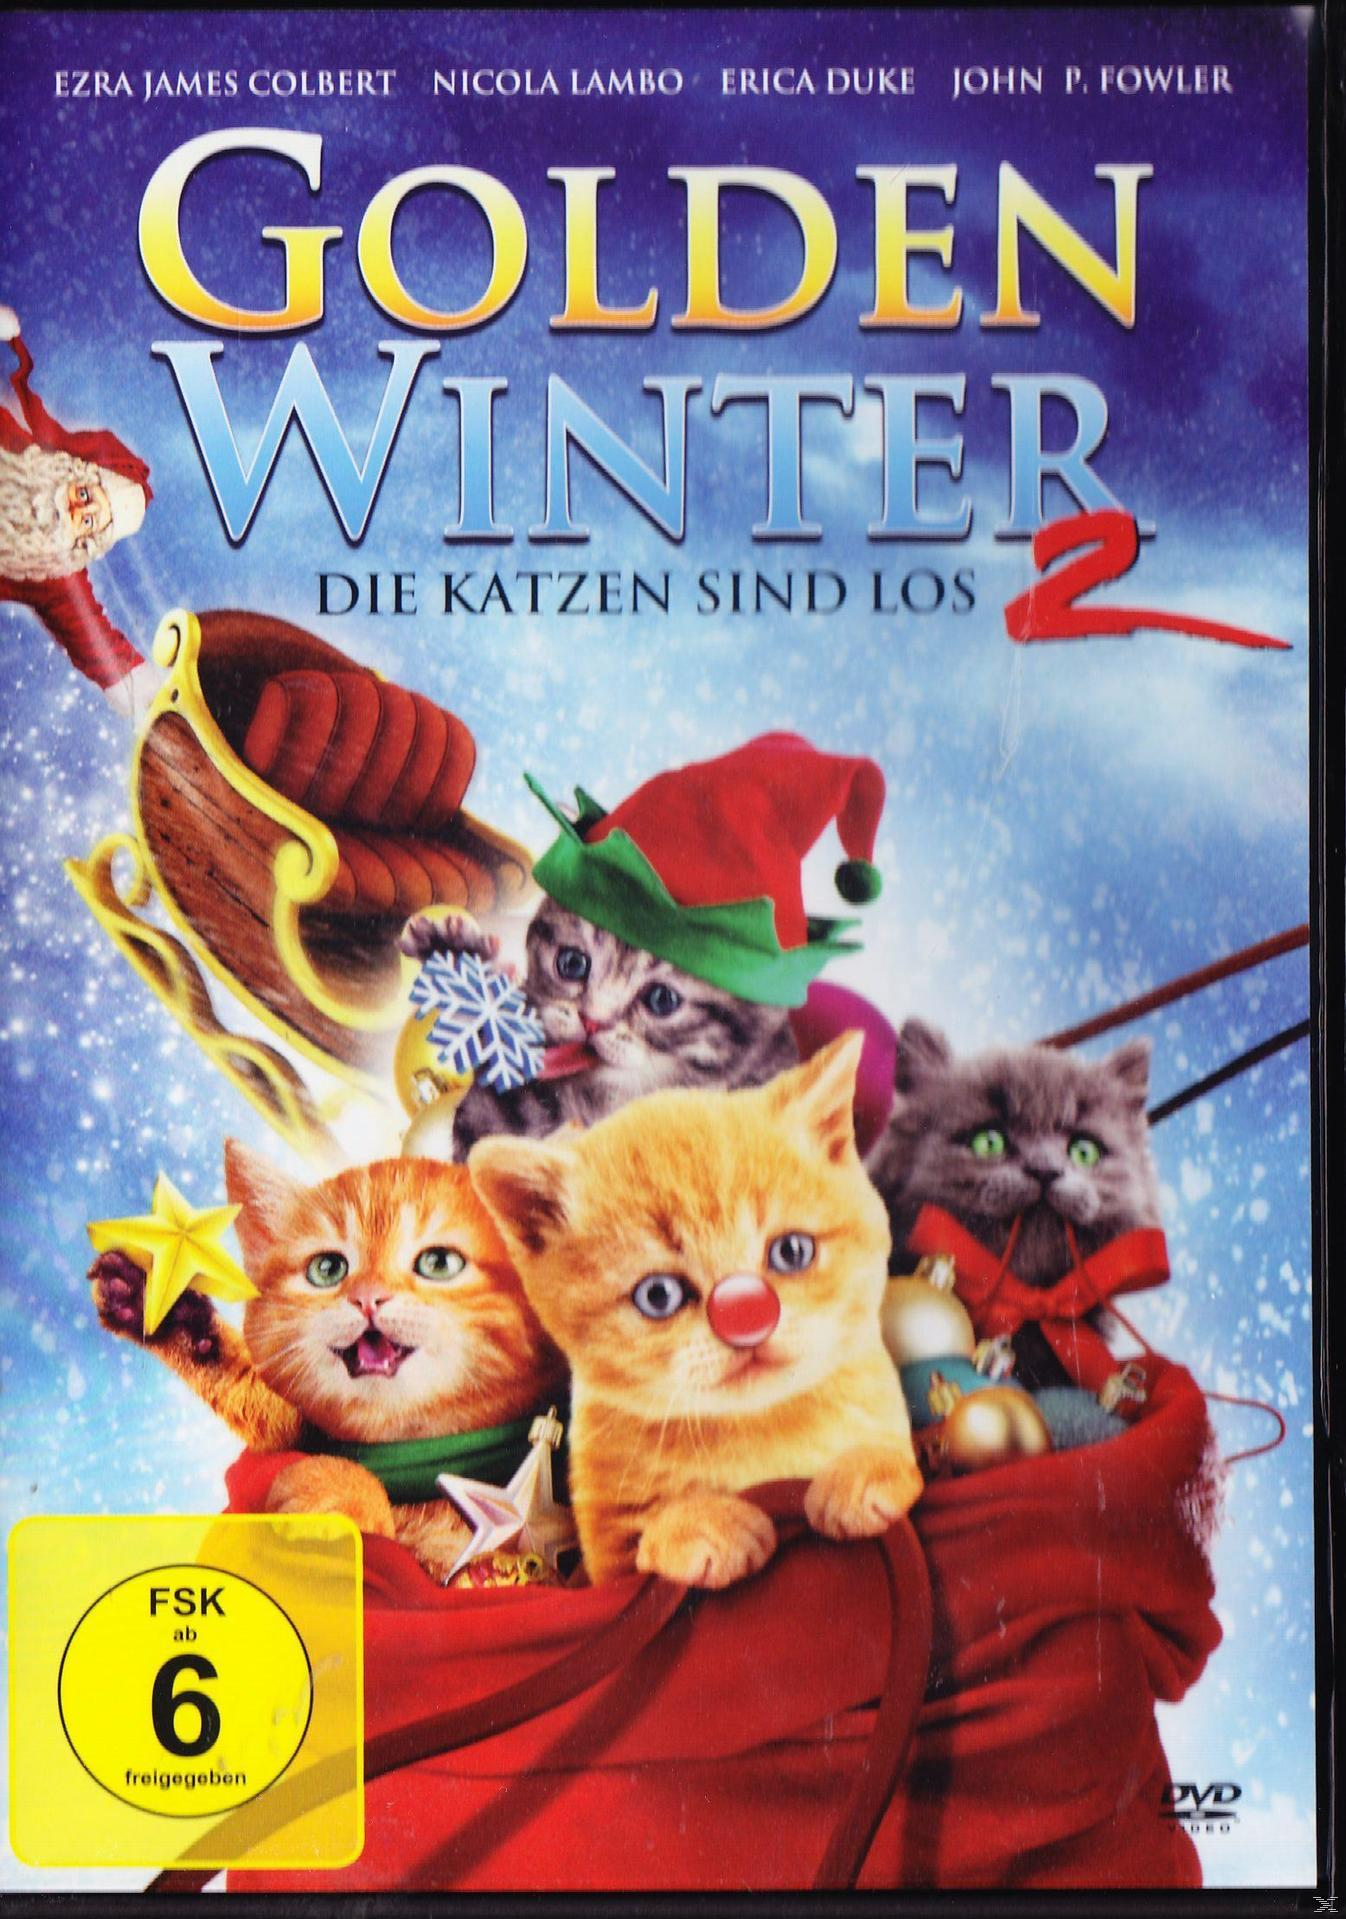 Golden Winter 2 Die sind los Katzen - DVD